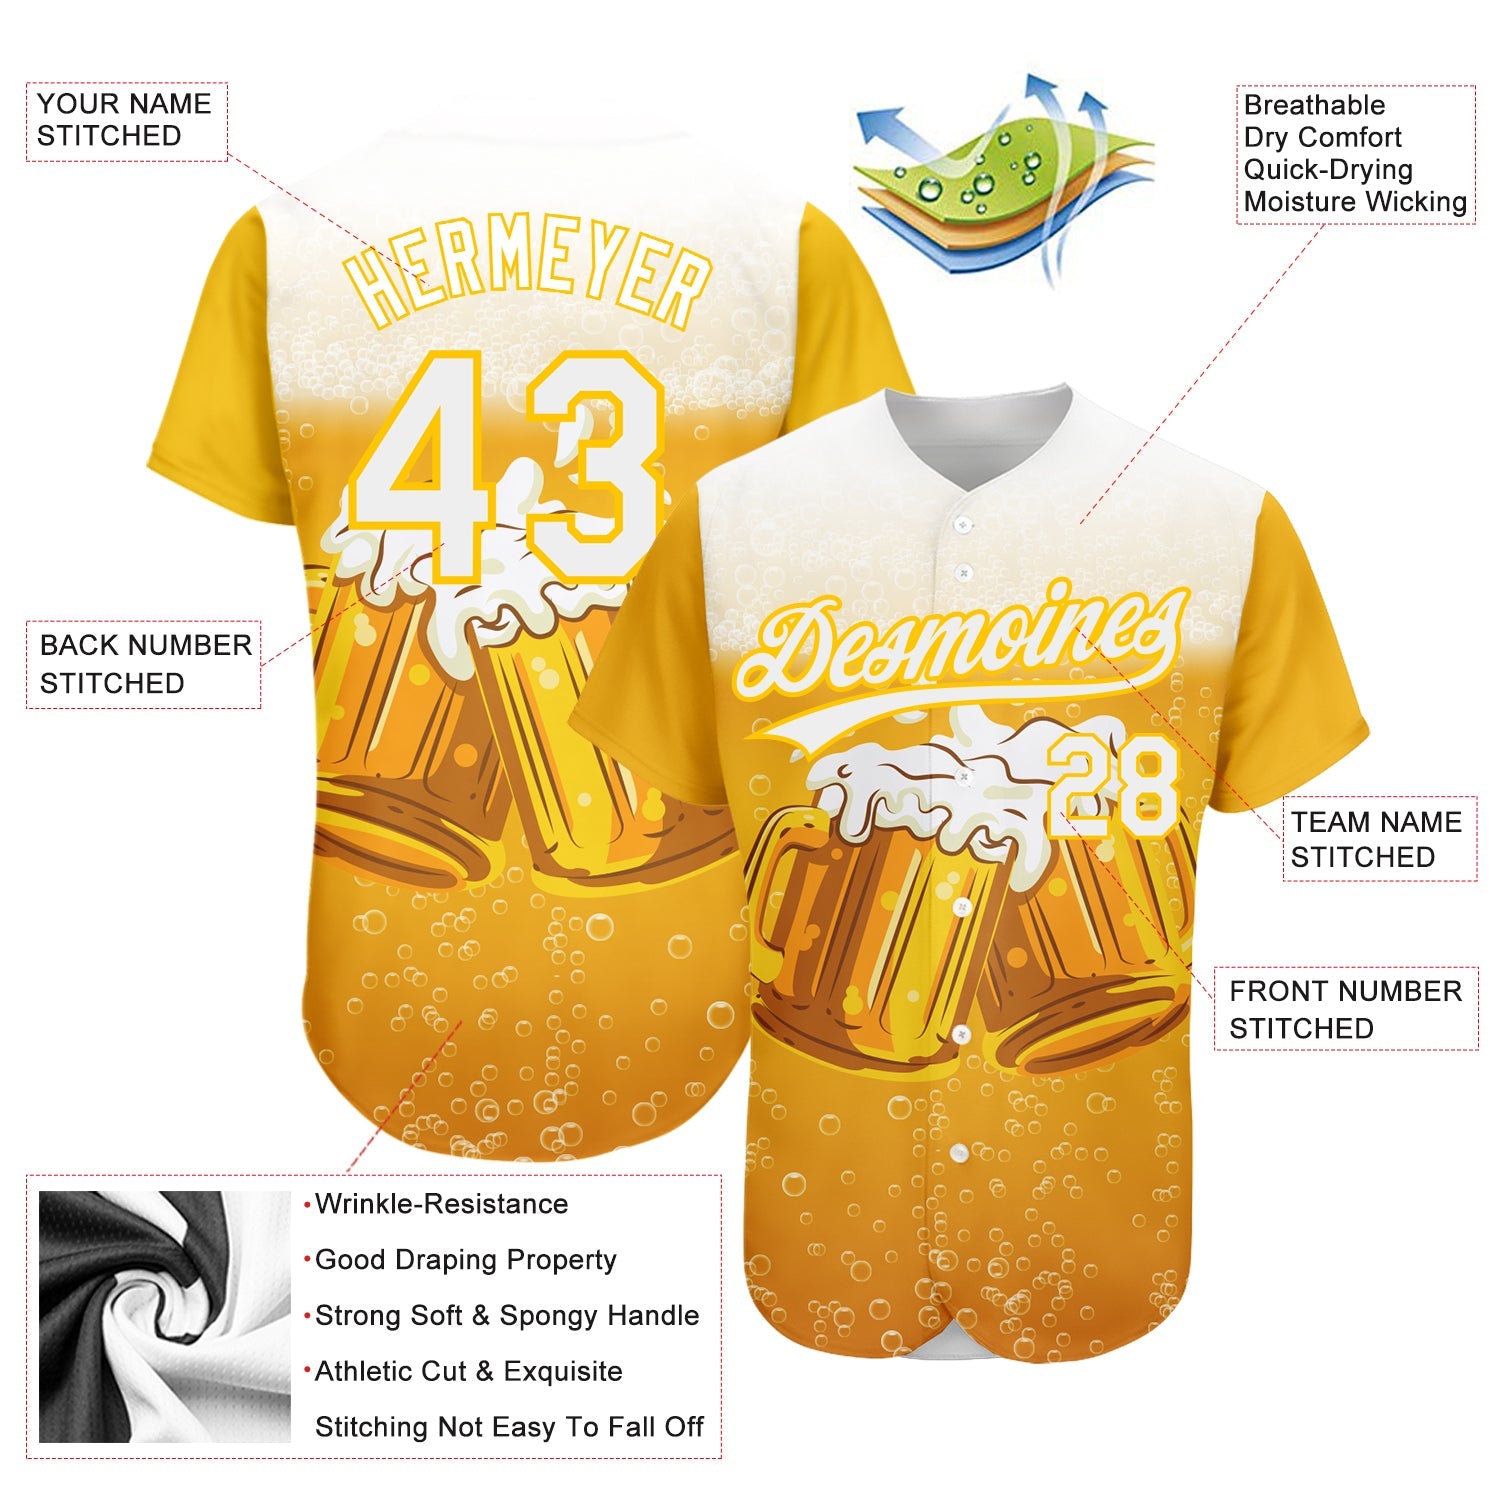 カスタムイエローホワイト3Dパターンデザイン国際ビールデー本物の野球ユニフォーム